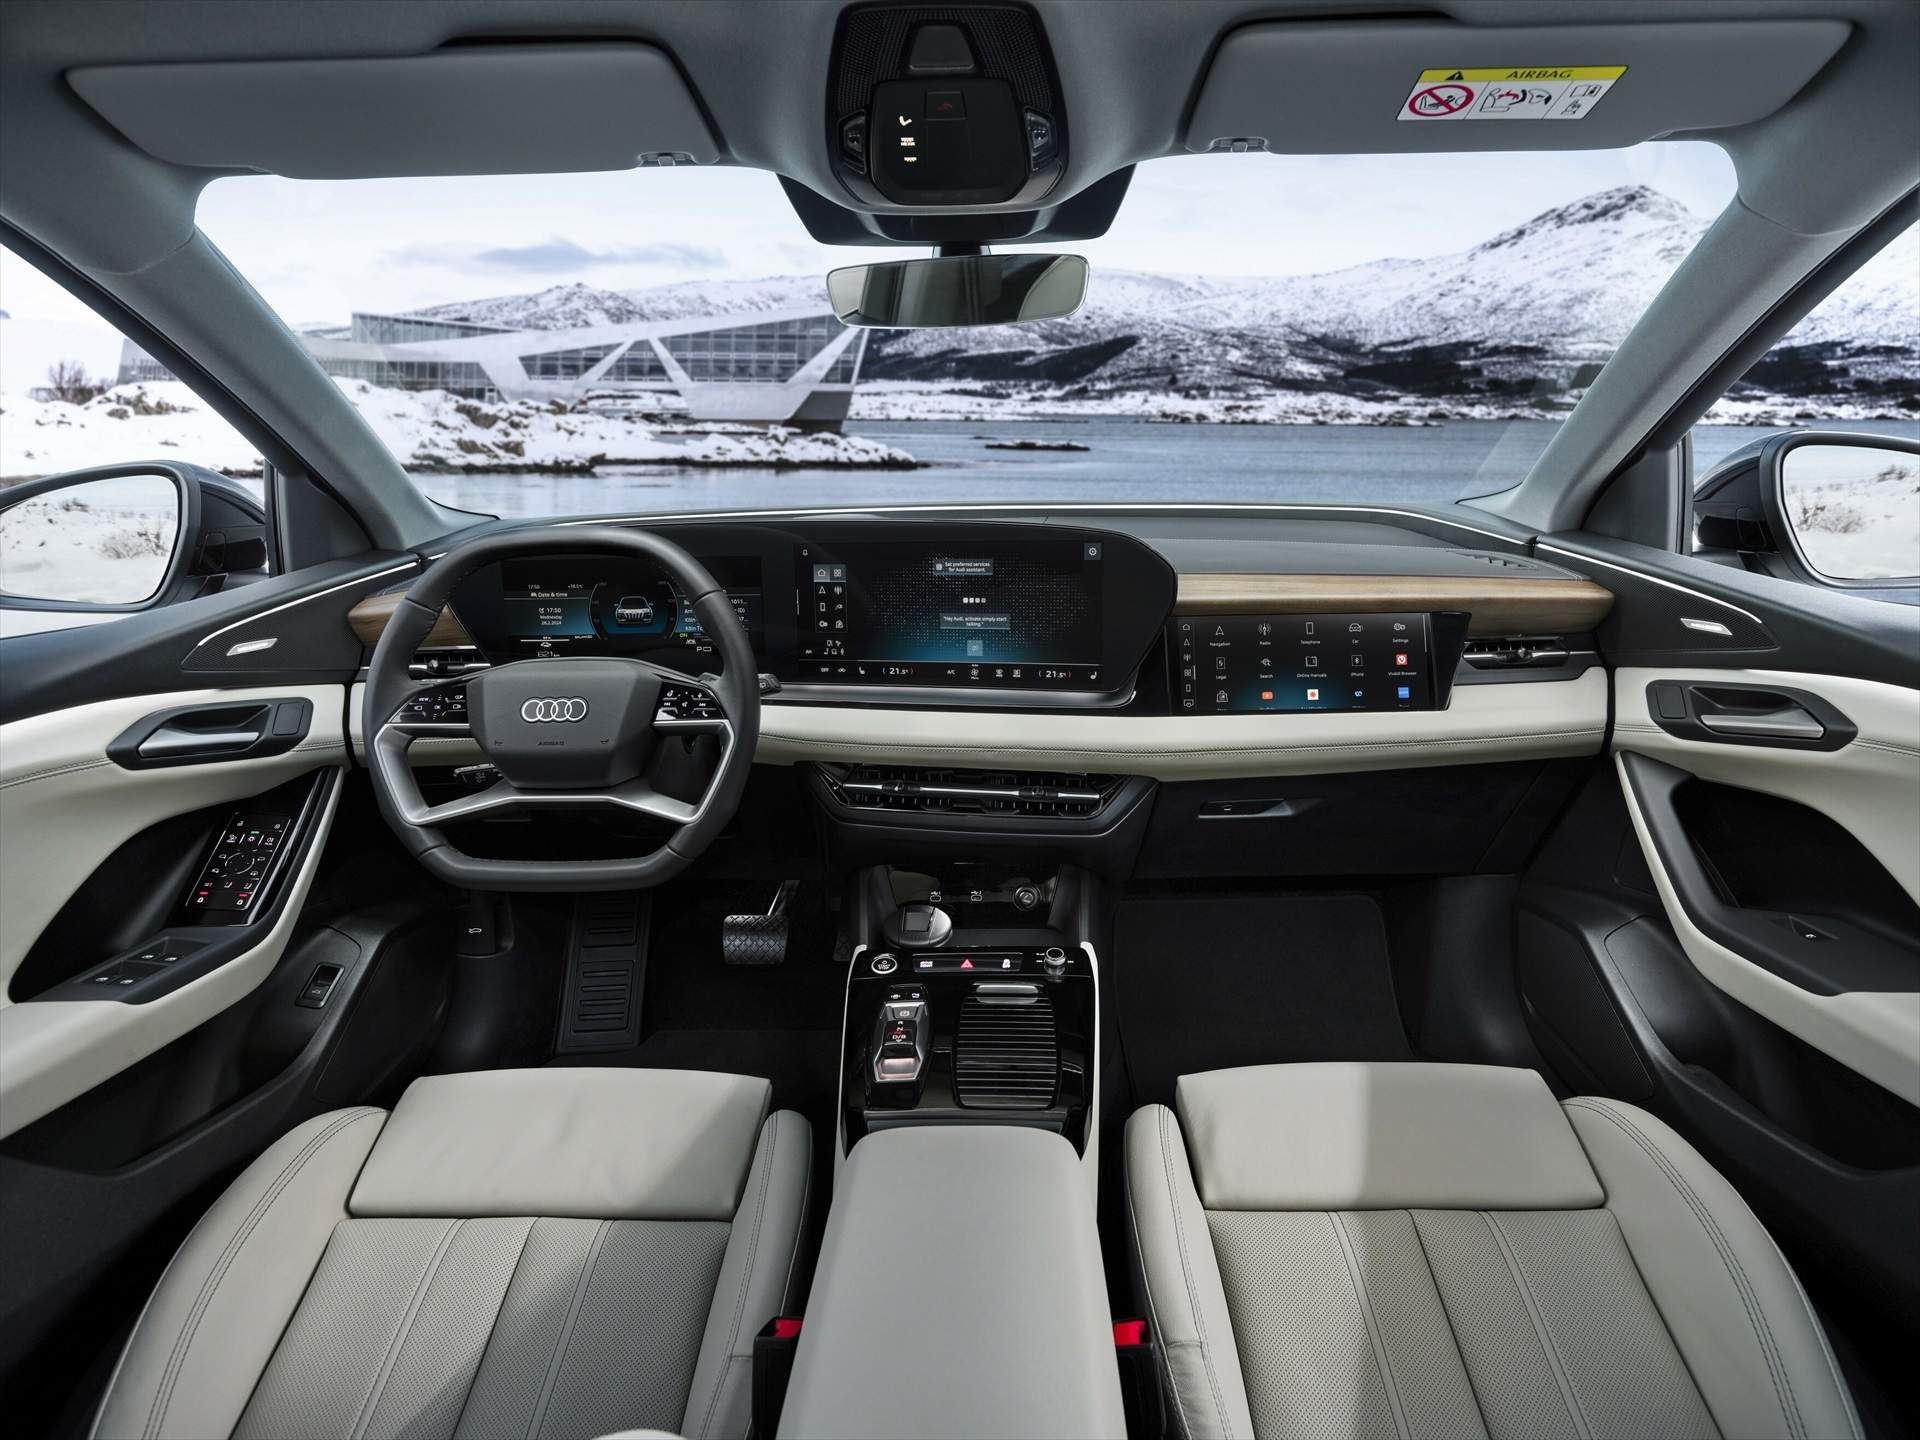 Audi introduce mejoras a sus funciones de control de voz con ChatGPT